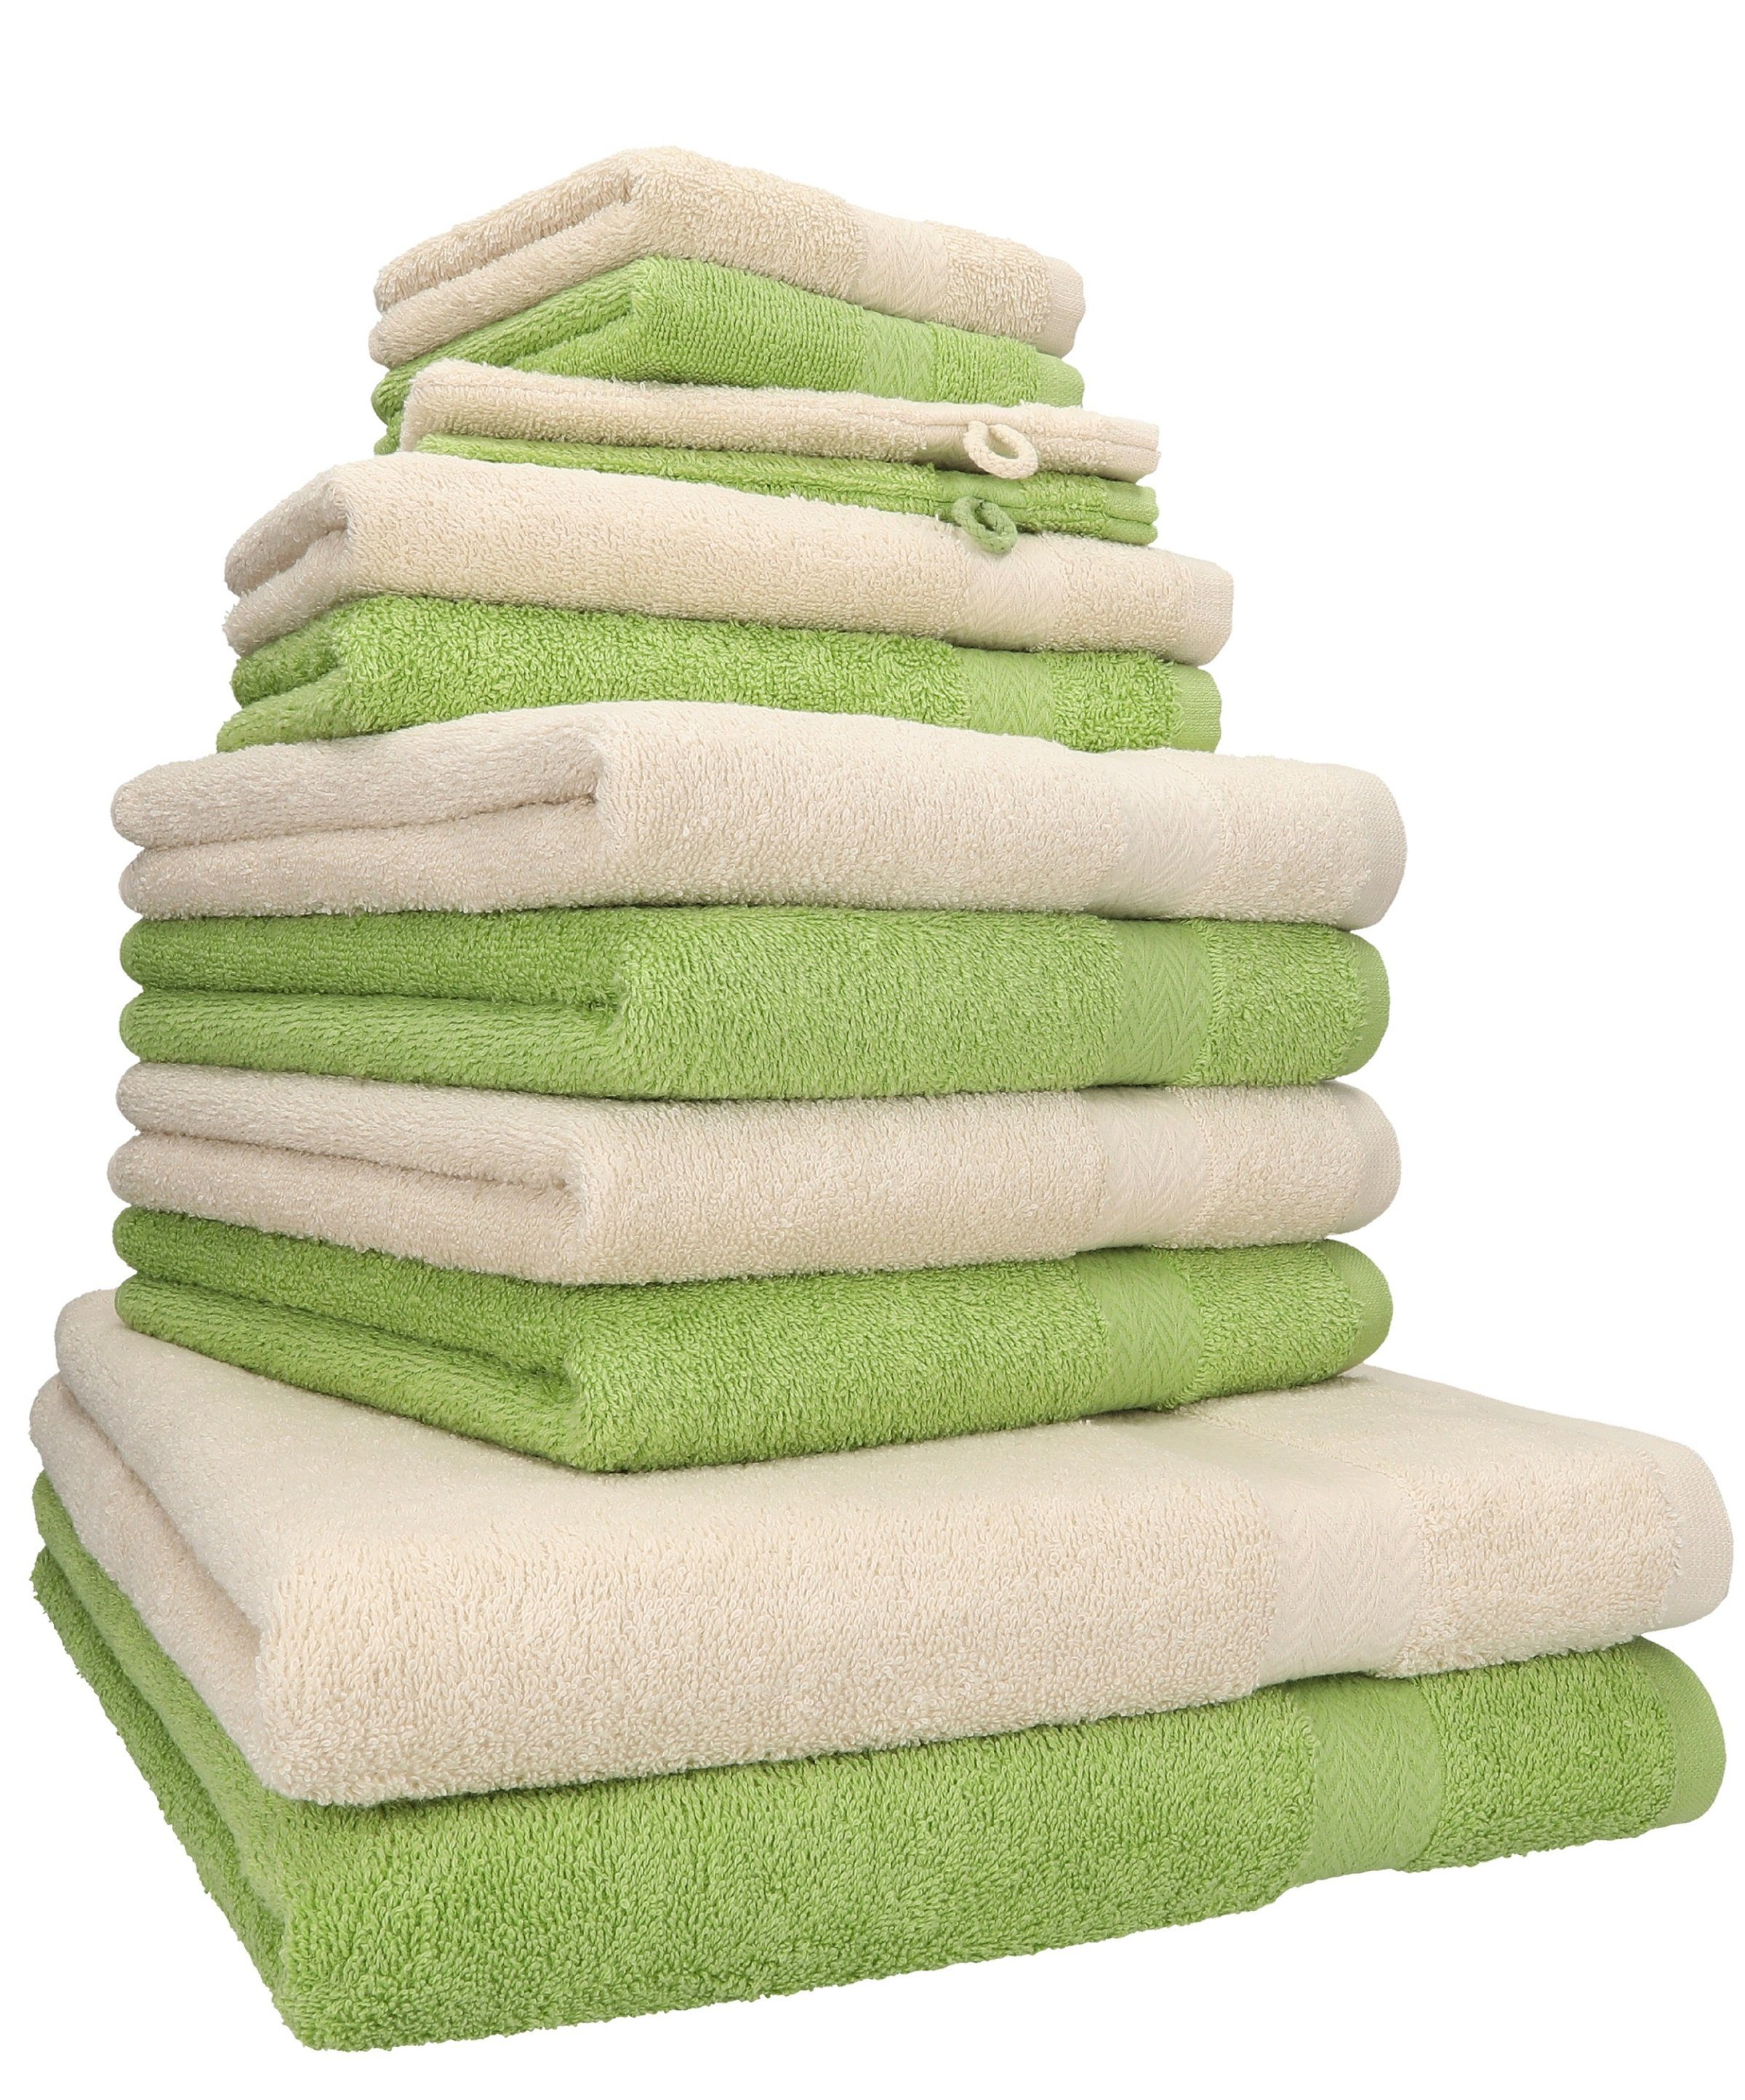 Betz Handtuch Set 12-tlg. Handtuch Set Premium Farbe Sand/avocadogrün, 100% Baumwolle, (12-tlg) | Handtuch-Sets